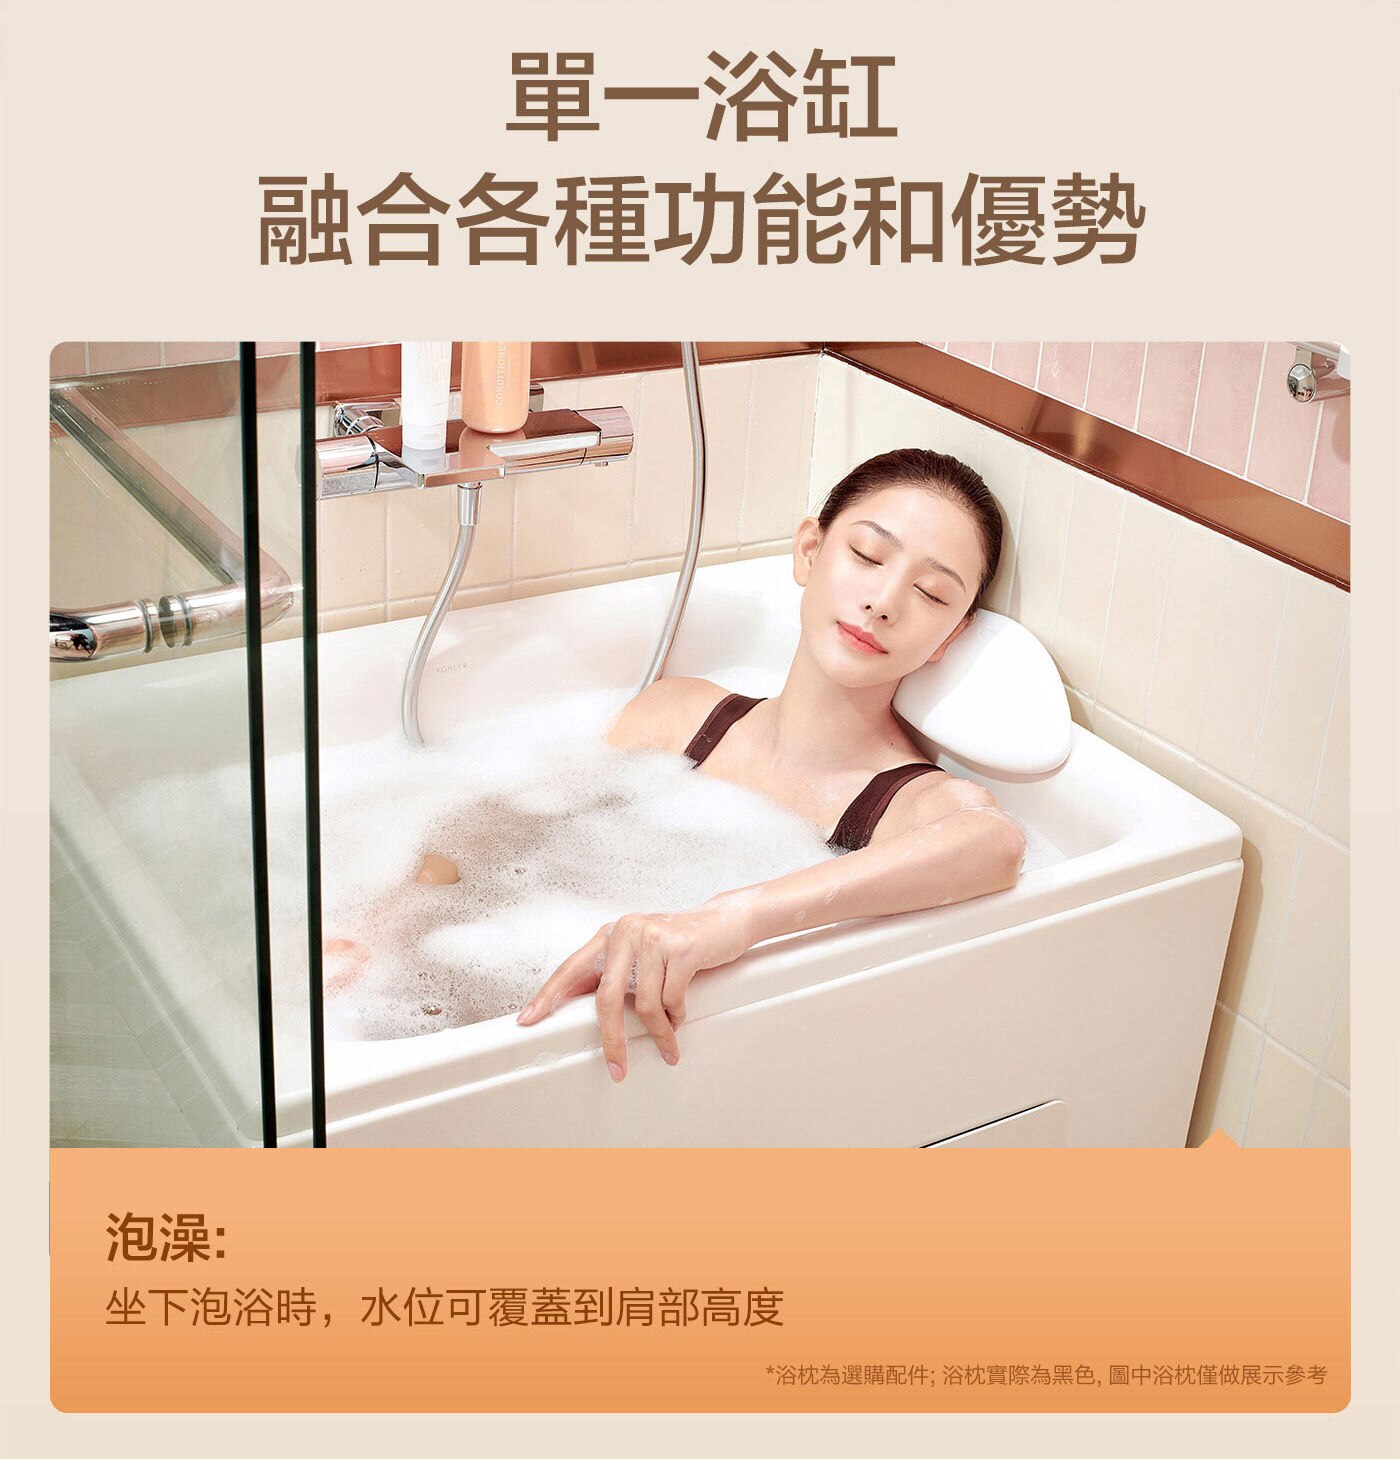 KOHLER 座臥式浴缸左角位 帶腳蹬單一浴缸融合各種功能和優勢